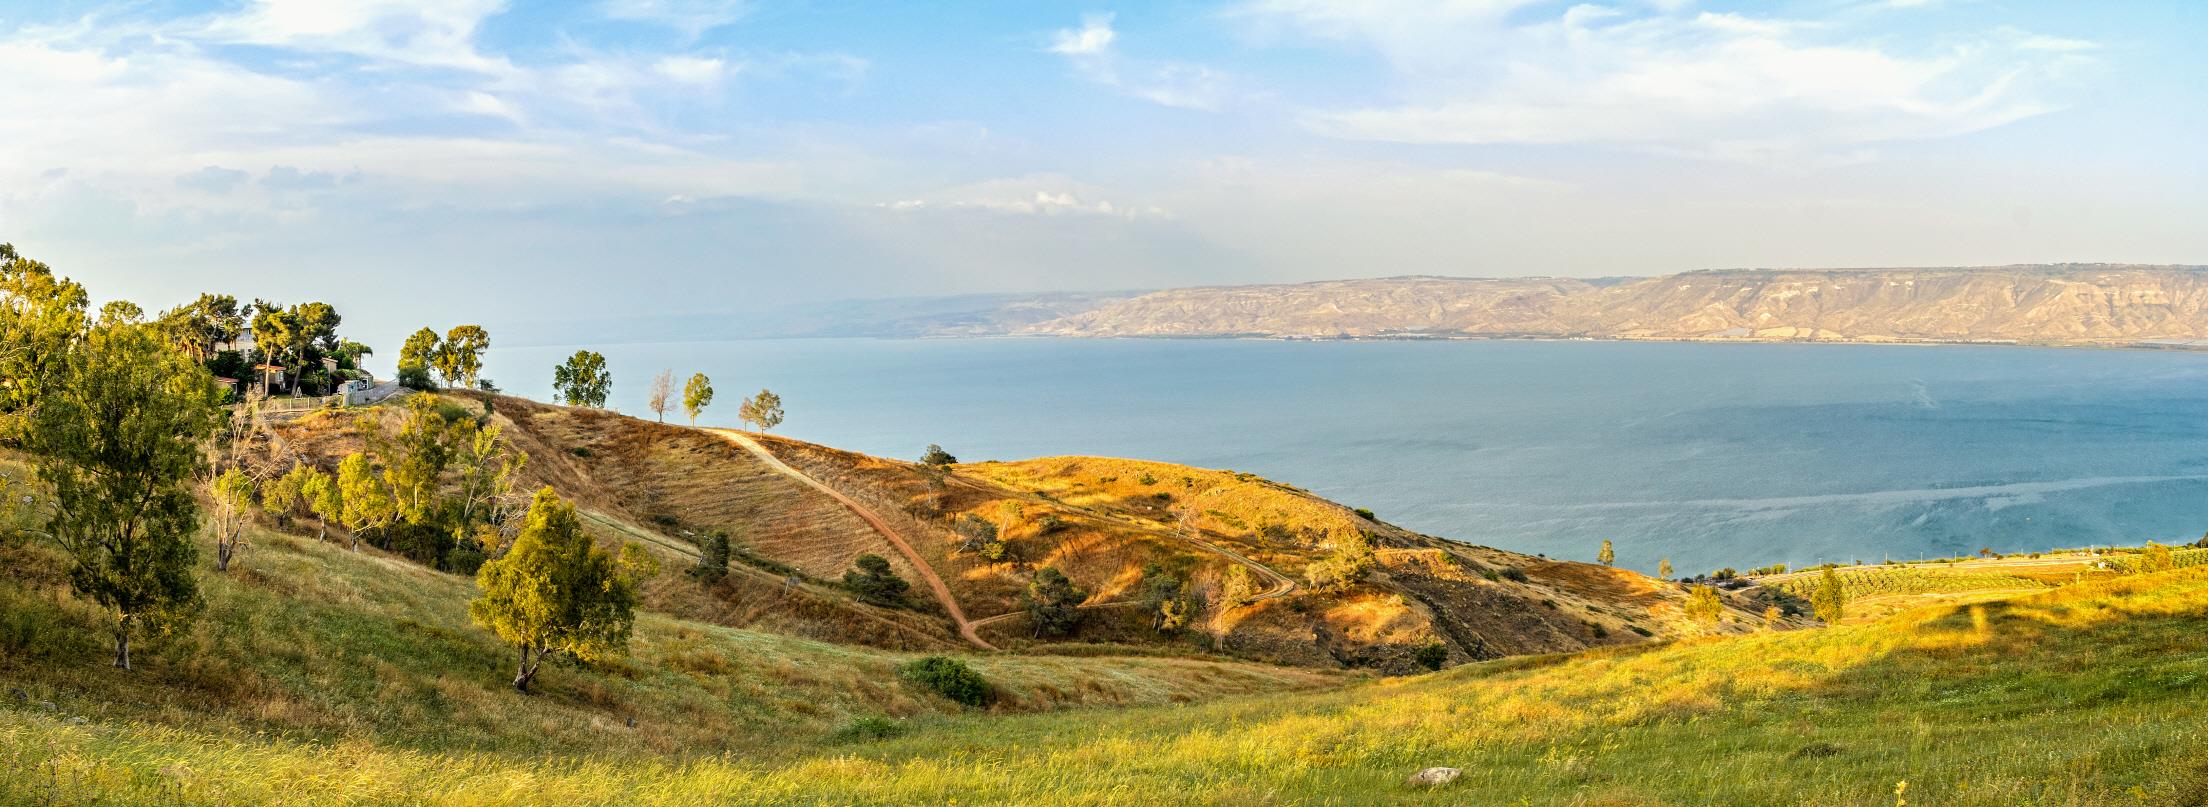 갈릴리 호수  Sea of Galilee